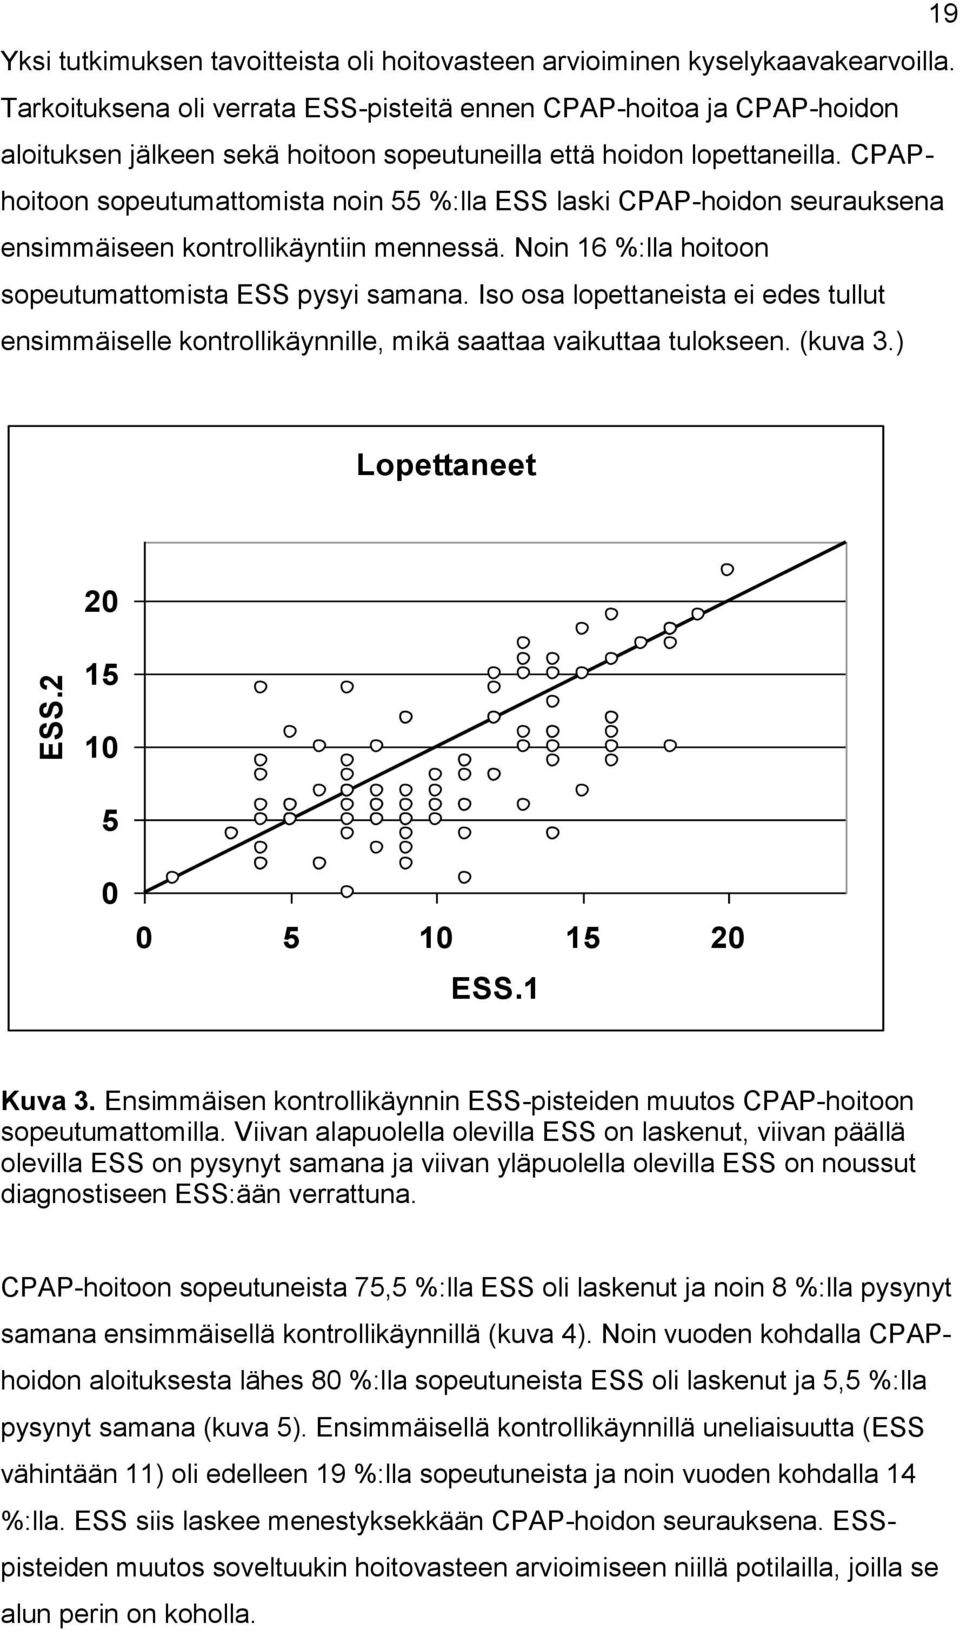 CPAPhoitoon sopeutumattomista noin 55 %:lla ESS laski CPAP-hoidon seurauksena ensimmäiseen kontrollikäyntiin mennessä. Noin 16 %:lla hoitoon sopeutumattomista ESS pysyi samana.